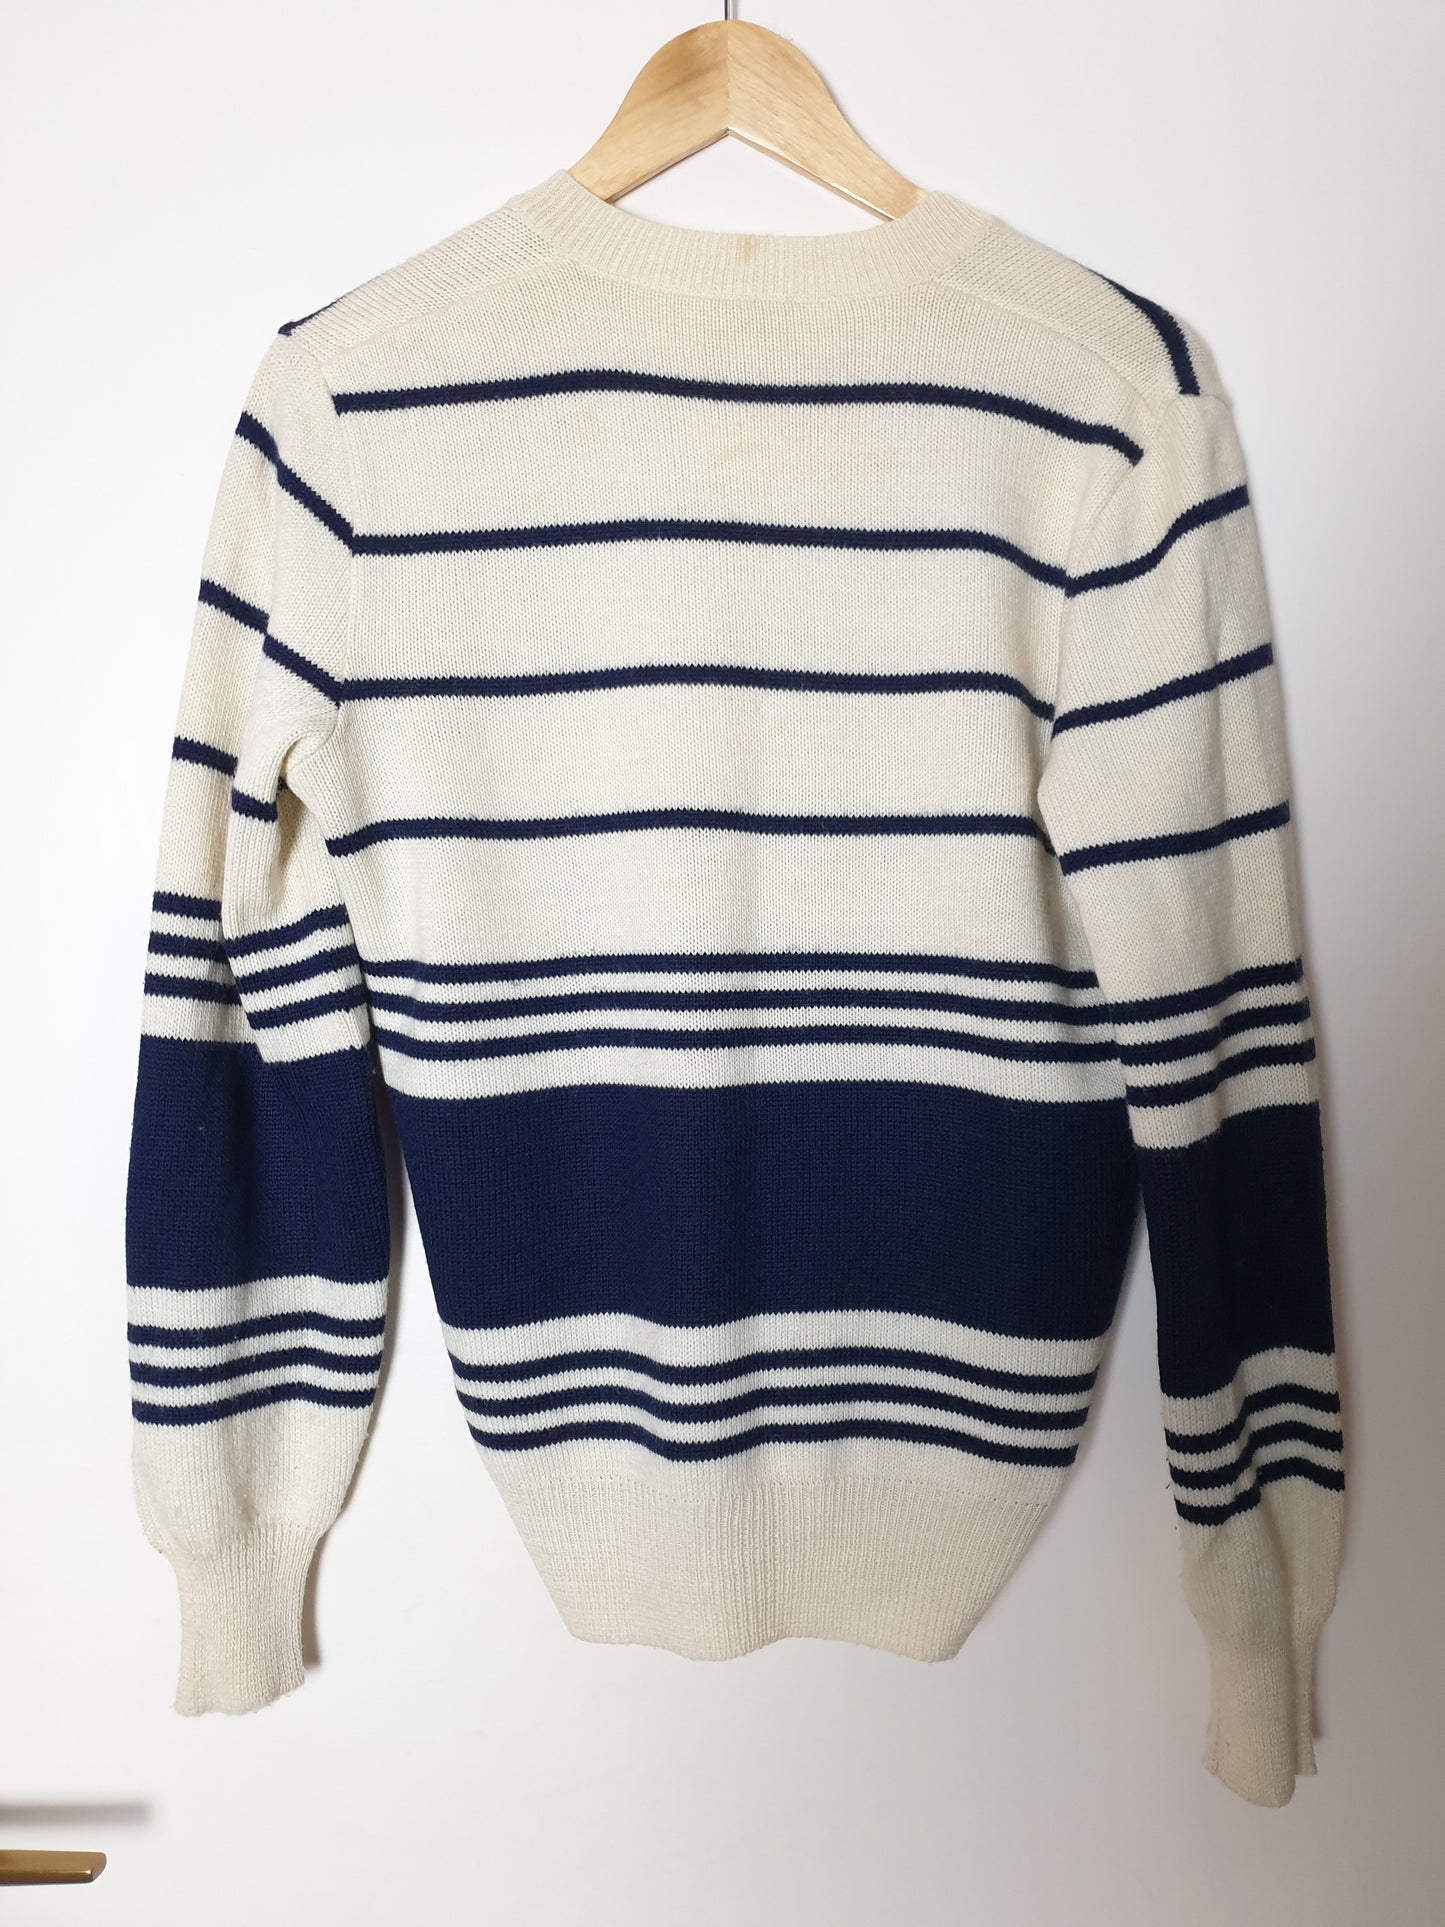 VINTAGE Australian - Pullover - Streifen - Vintage Italy - Blau/Weiß - Herren - L (50)